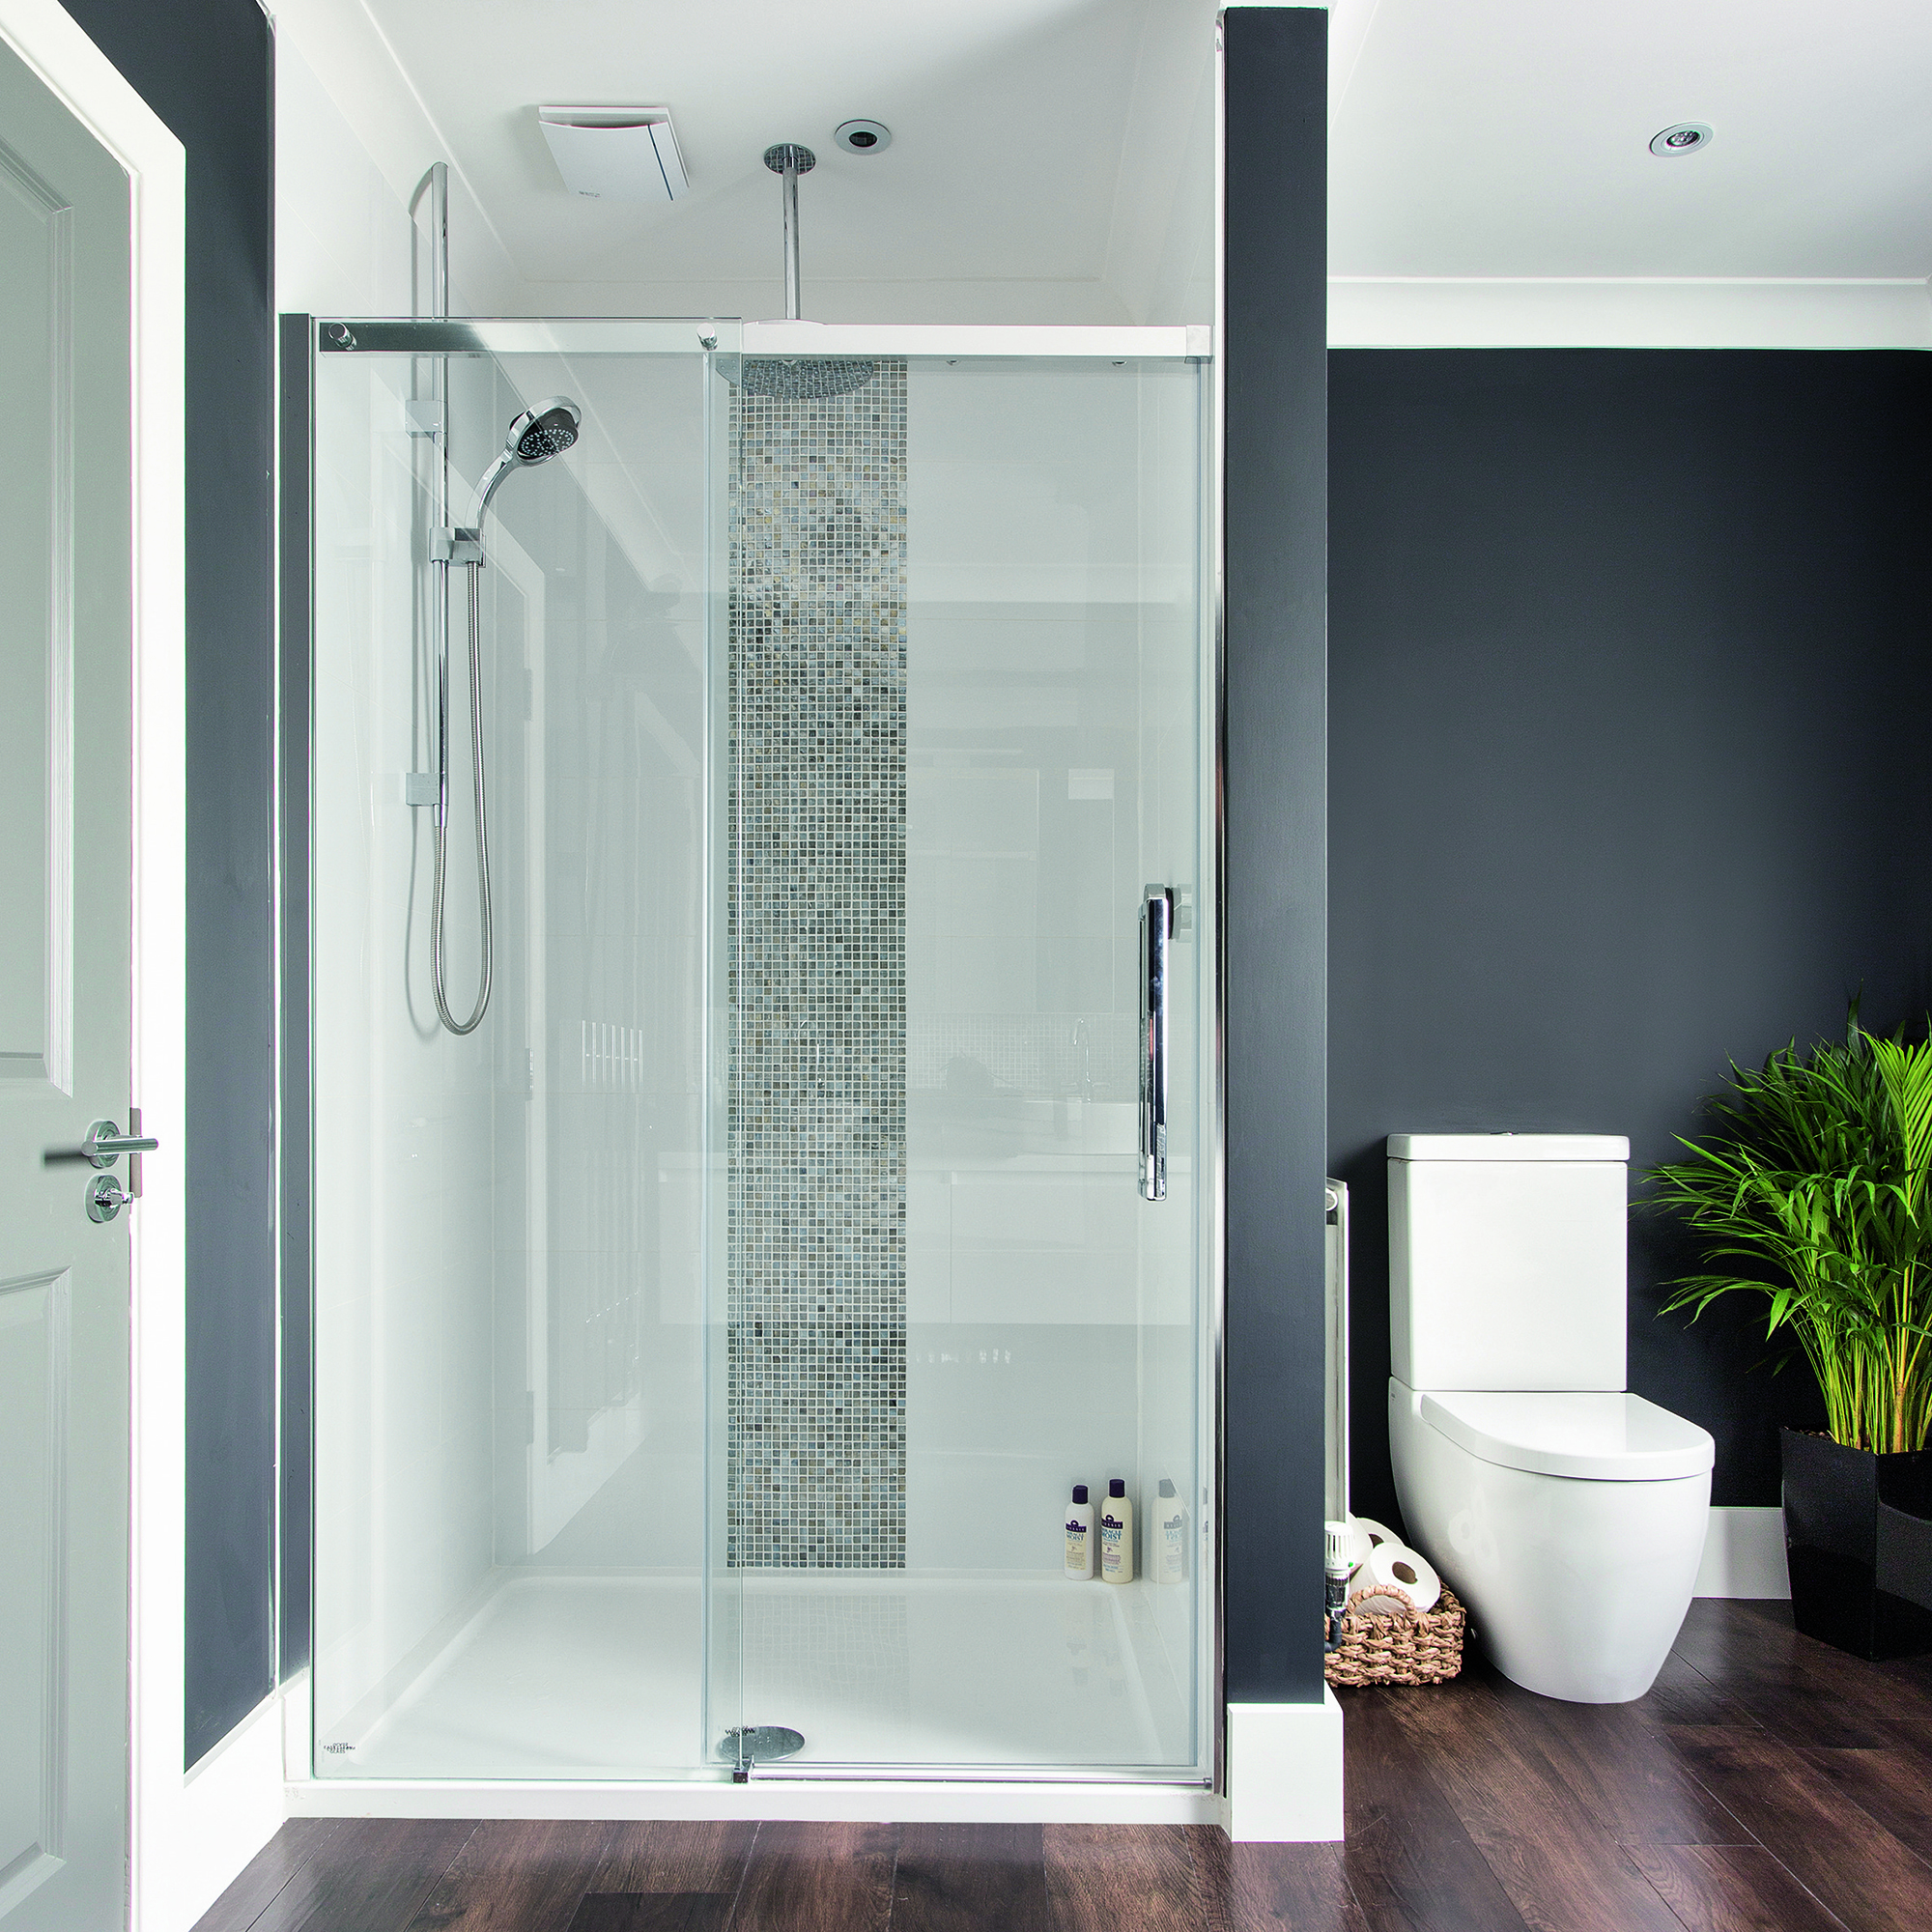 iluminacion zona ducha: cuarto de baño moderno en blanco y negro con ducha a ras de suelo con azulejos blancos y marco de mosaico oscuro